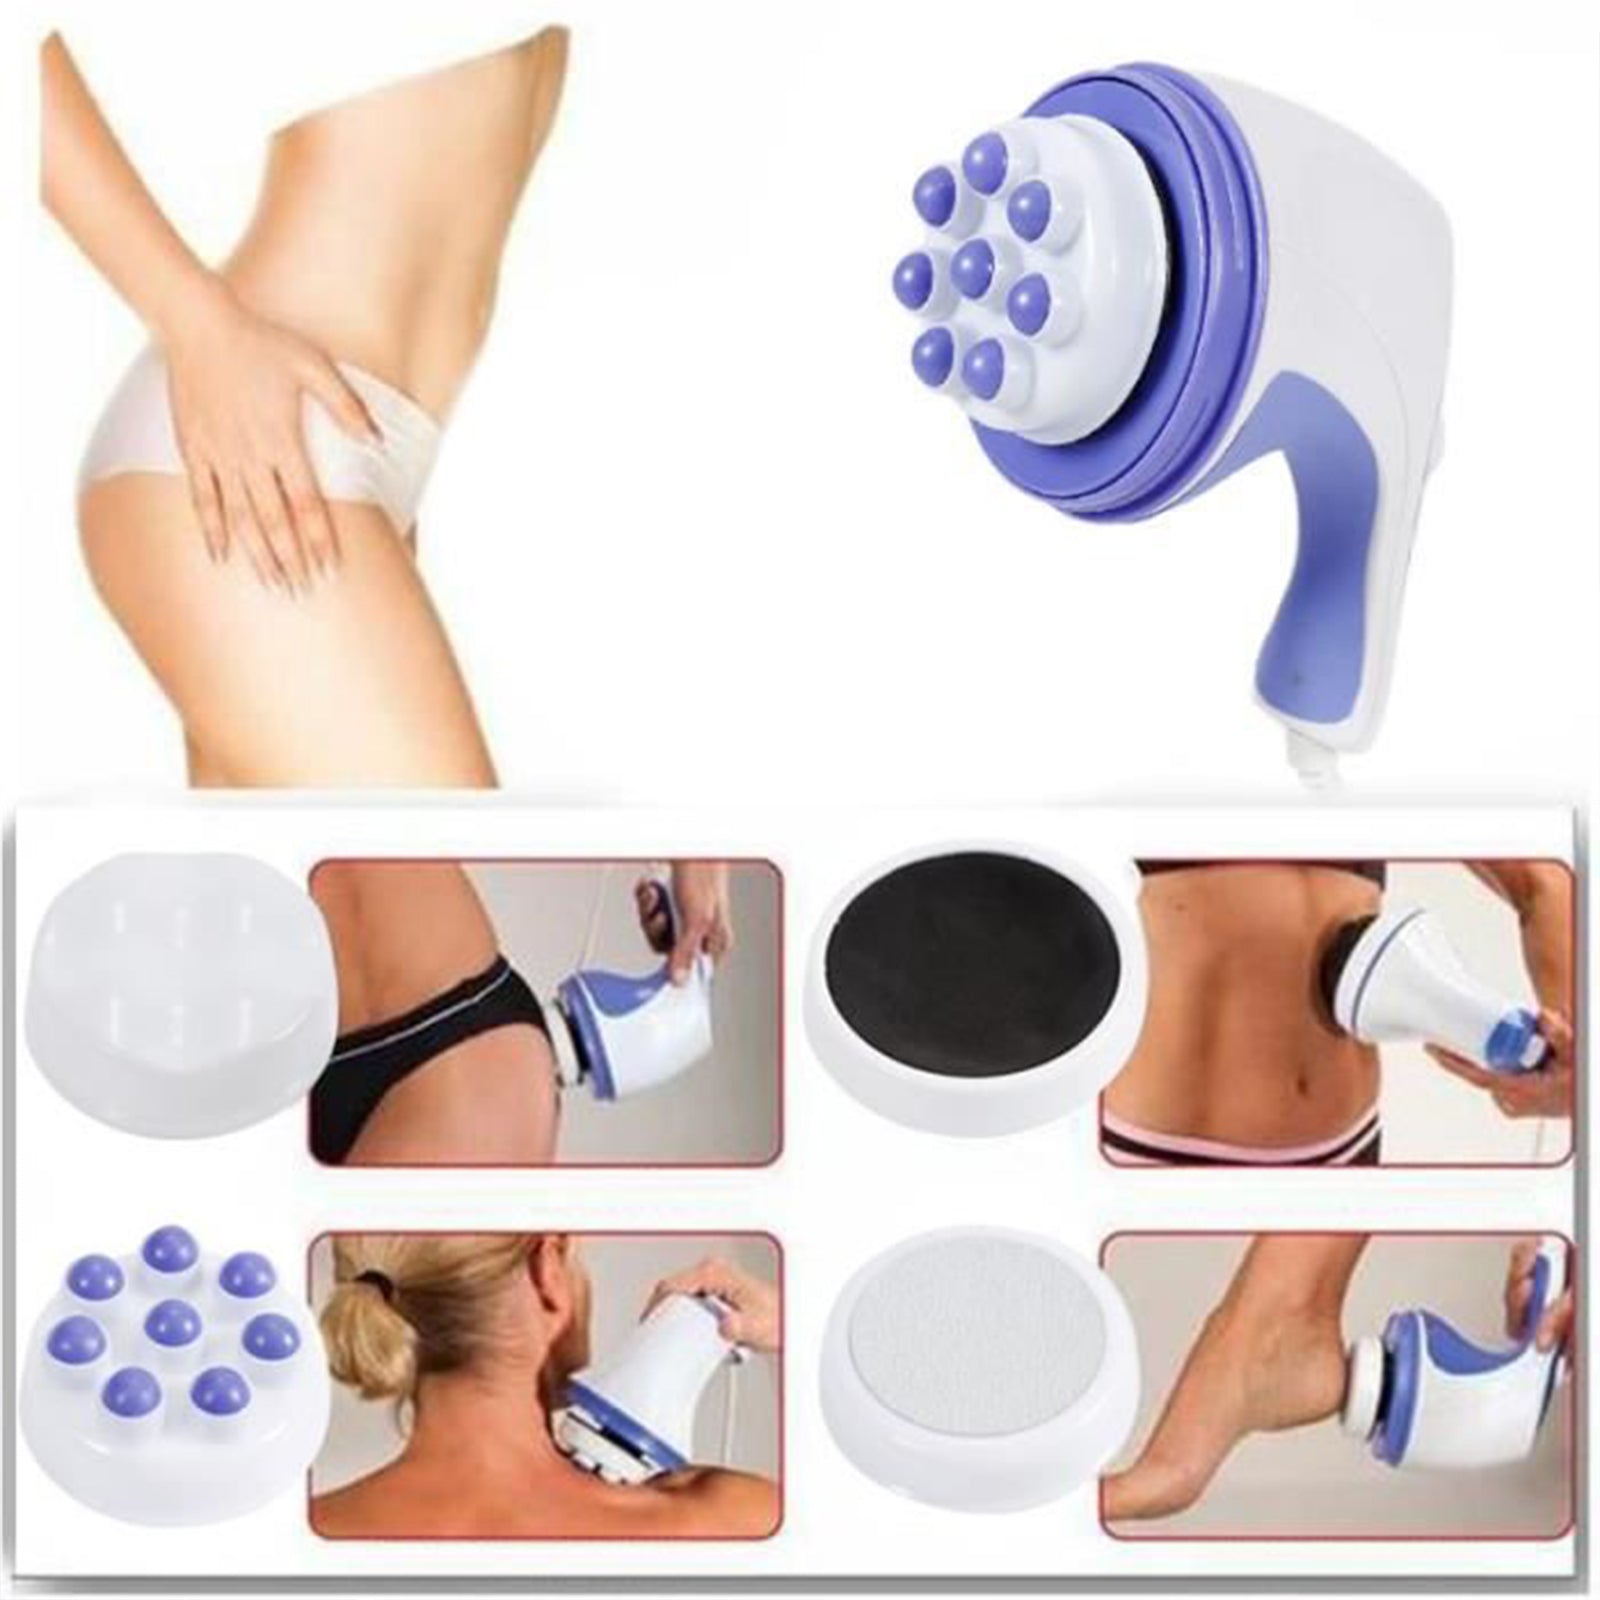 TD® Appareil de massage manuel à poussée de graisse Broyeur de graisse électrique Instrument amincissant infrarouge pour le corps